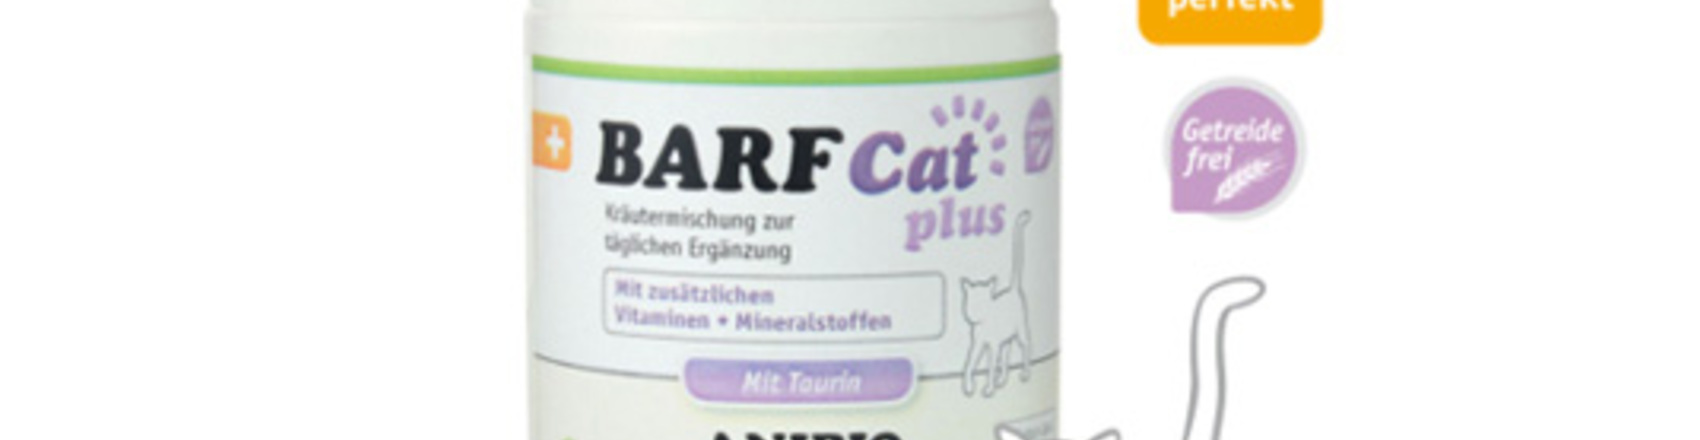 德國家醫。貓王生食/鮮食必須營養粉